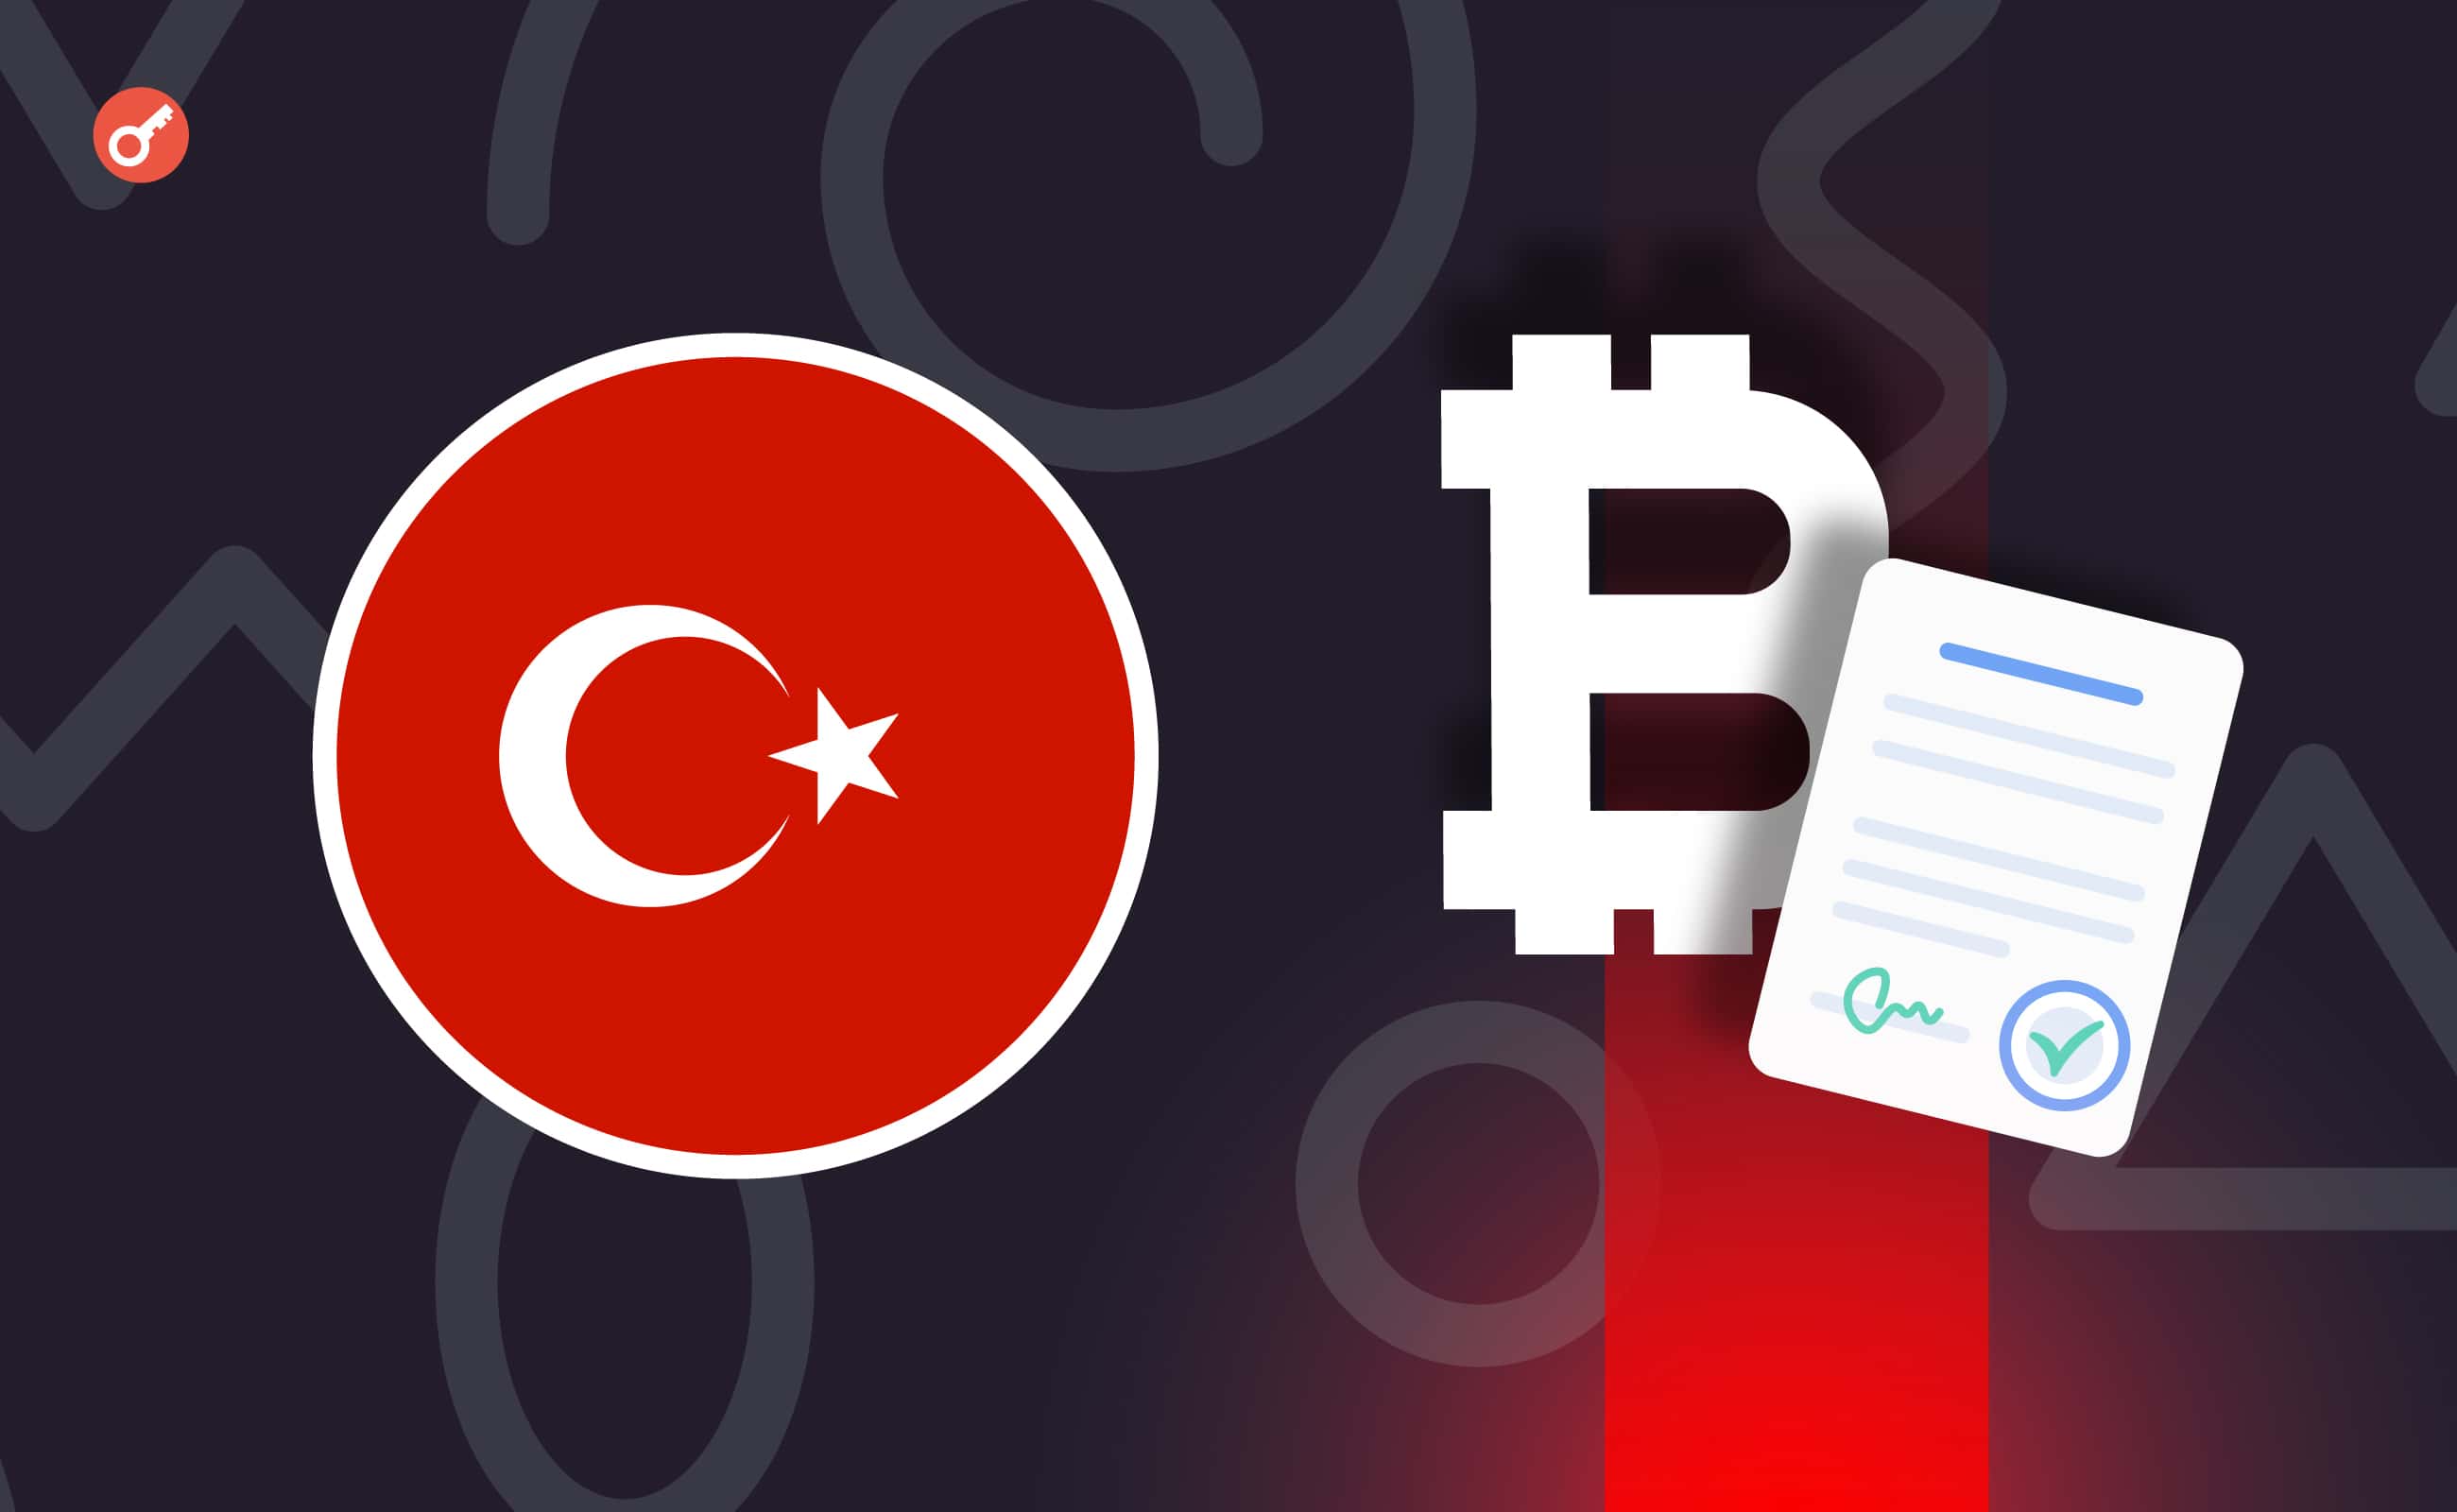 СМИ: регулирование криптовалют в Турции находится на завершающей стадии. Заглавный коллаж новости.